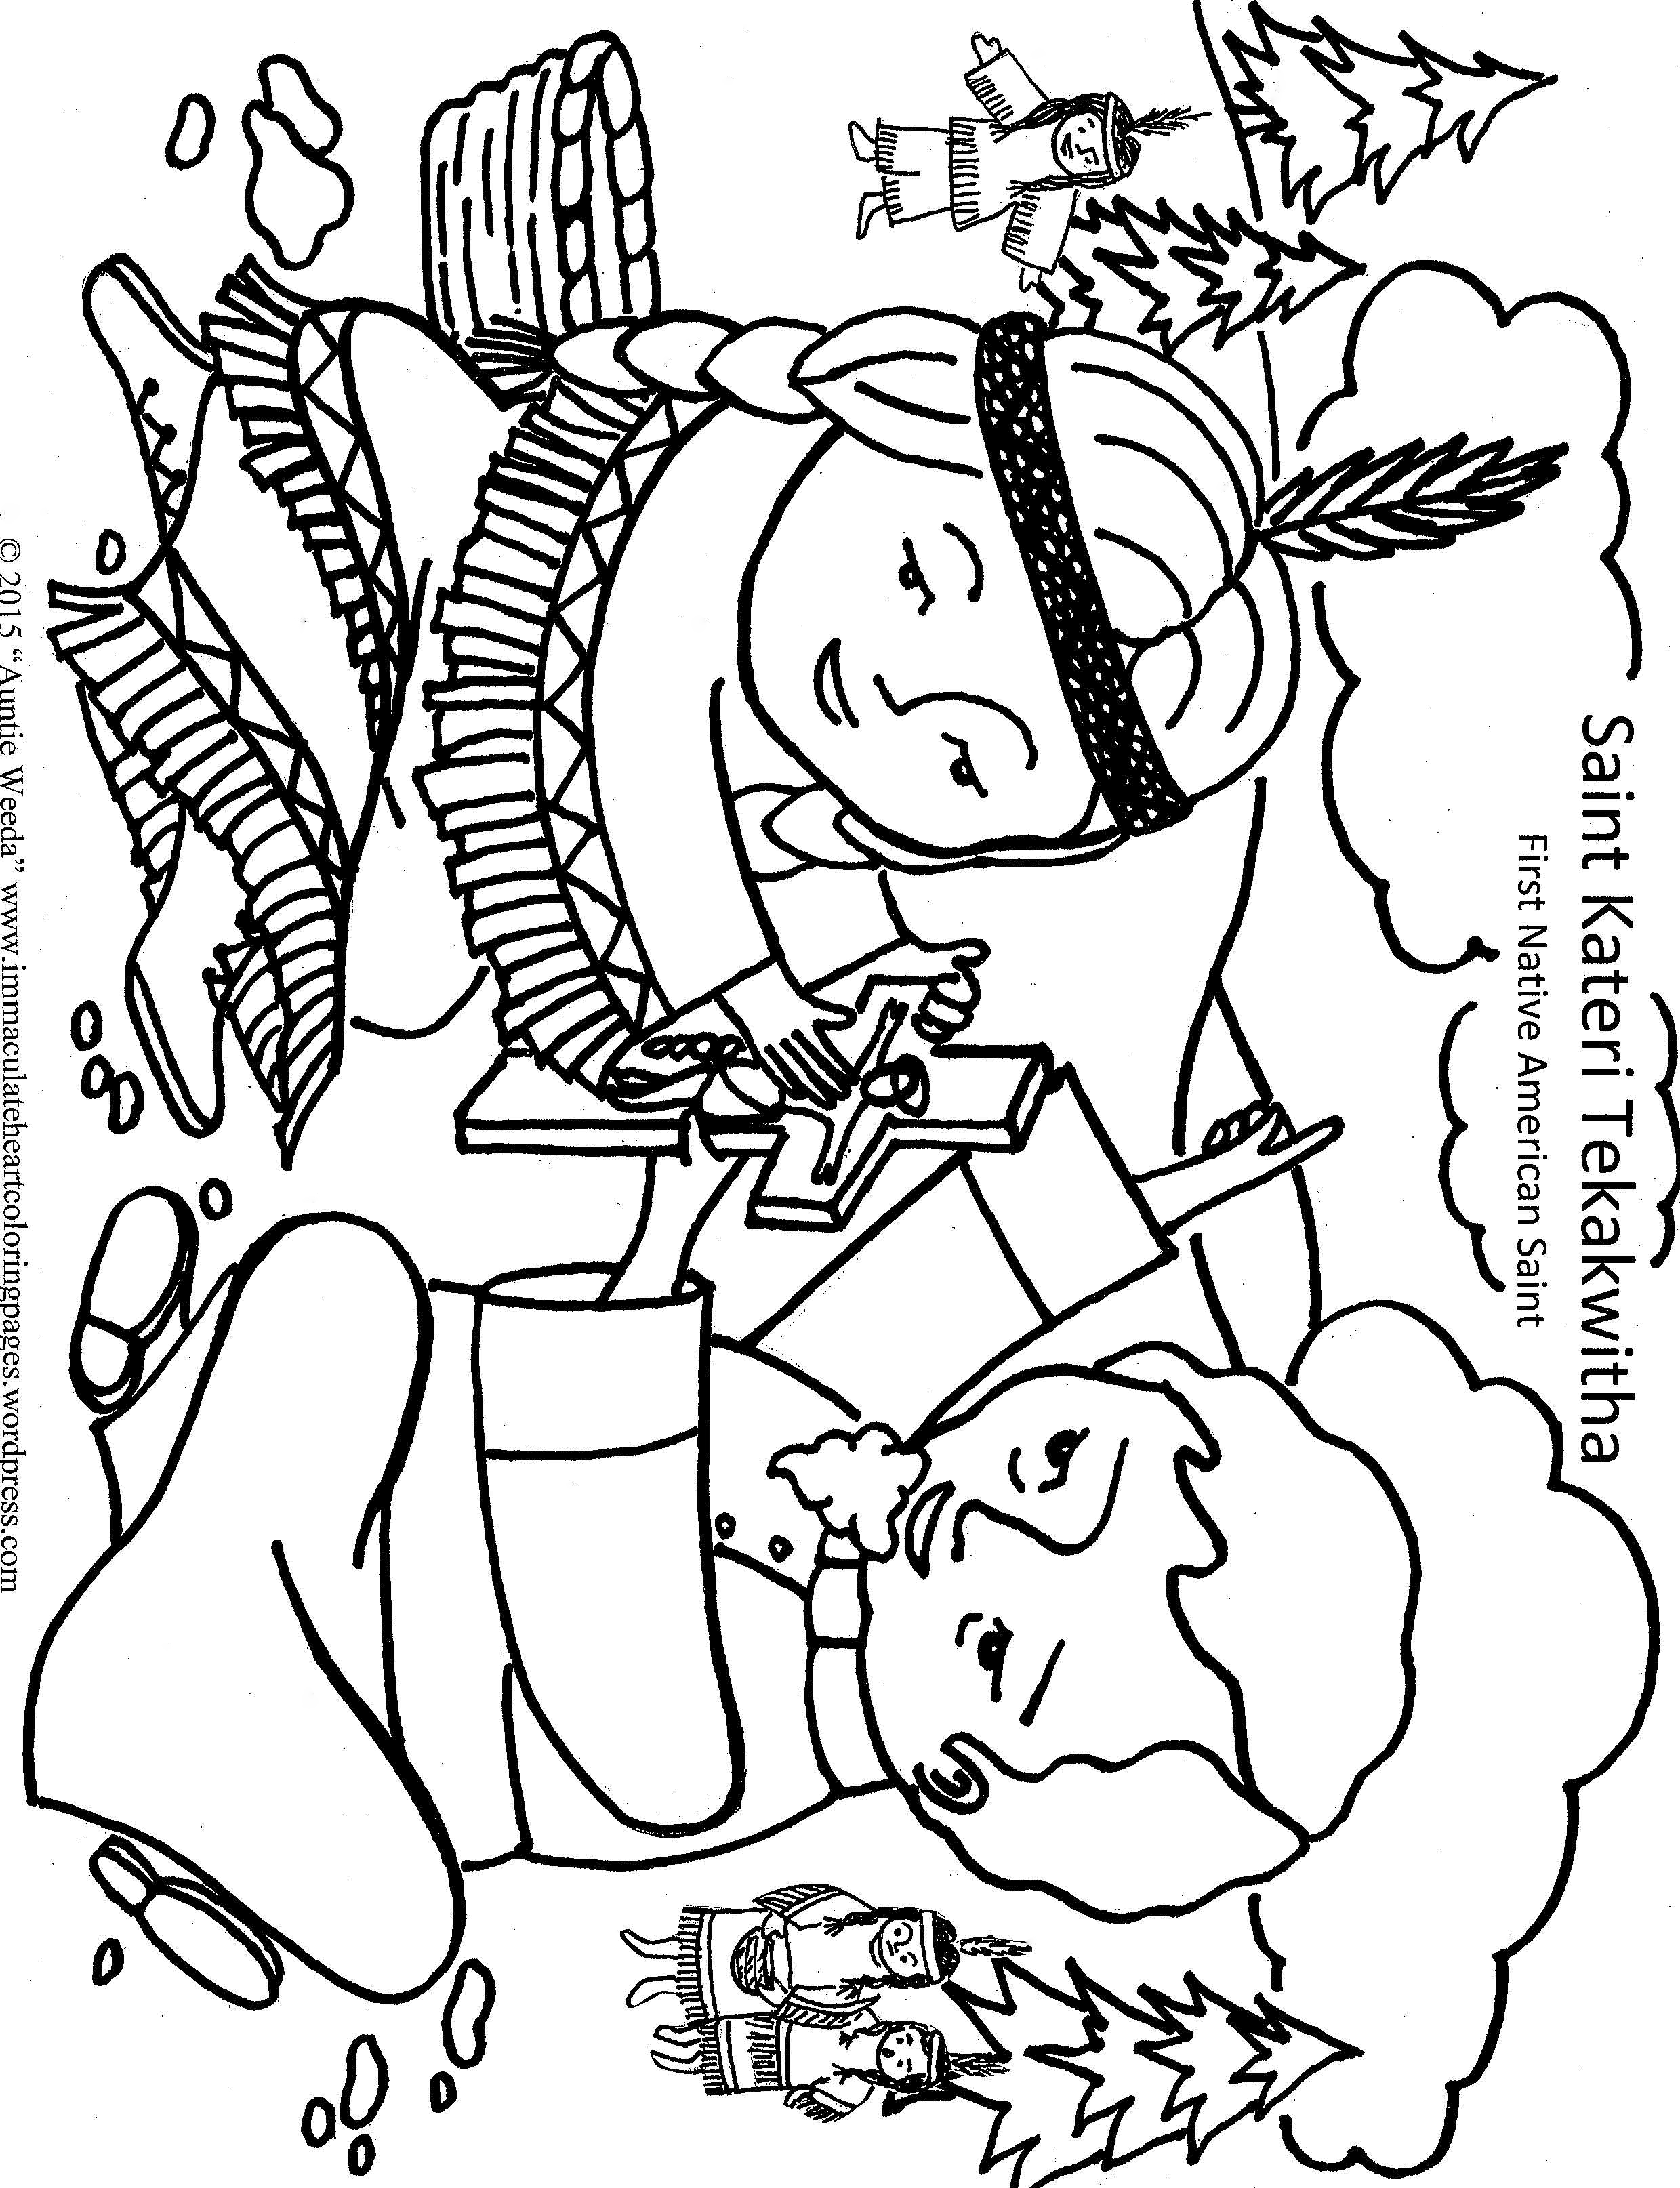 saint bernadette coloring pages - photo #25